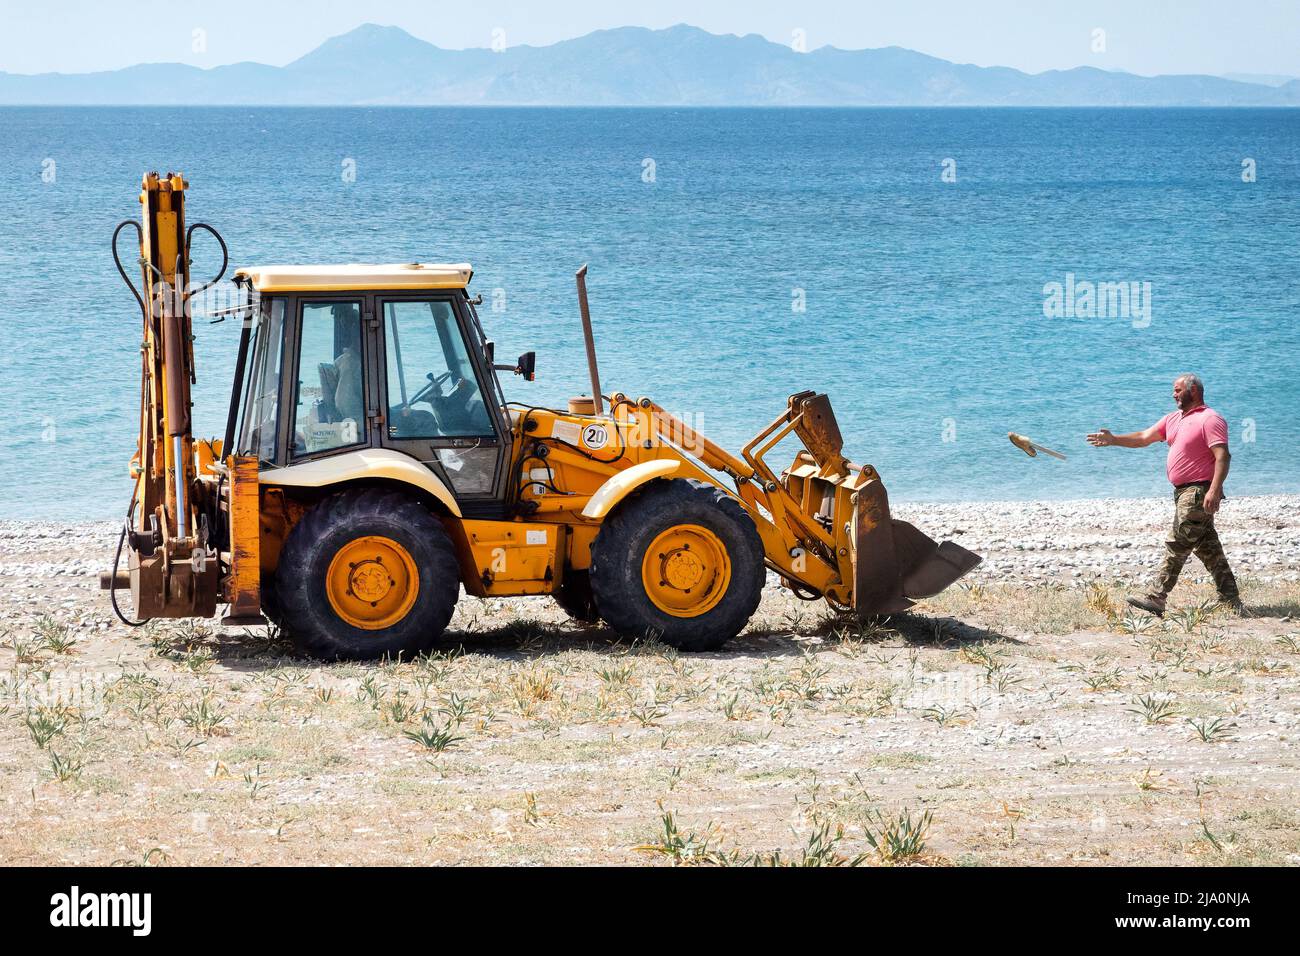 Un uomo di lavoro getta la lettiera in un salto di scavatori JCB mentre si ripuliscono e ripuliscono rifiuti scartati su una spiaggia vicino a Rodi, Grecia. Foto Stock